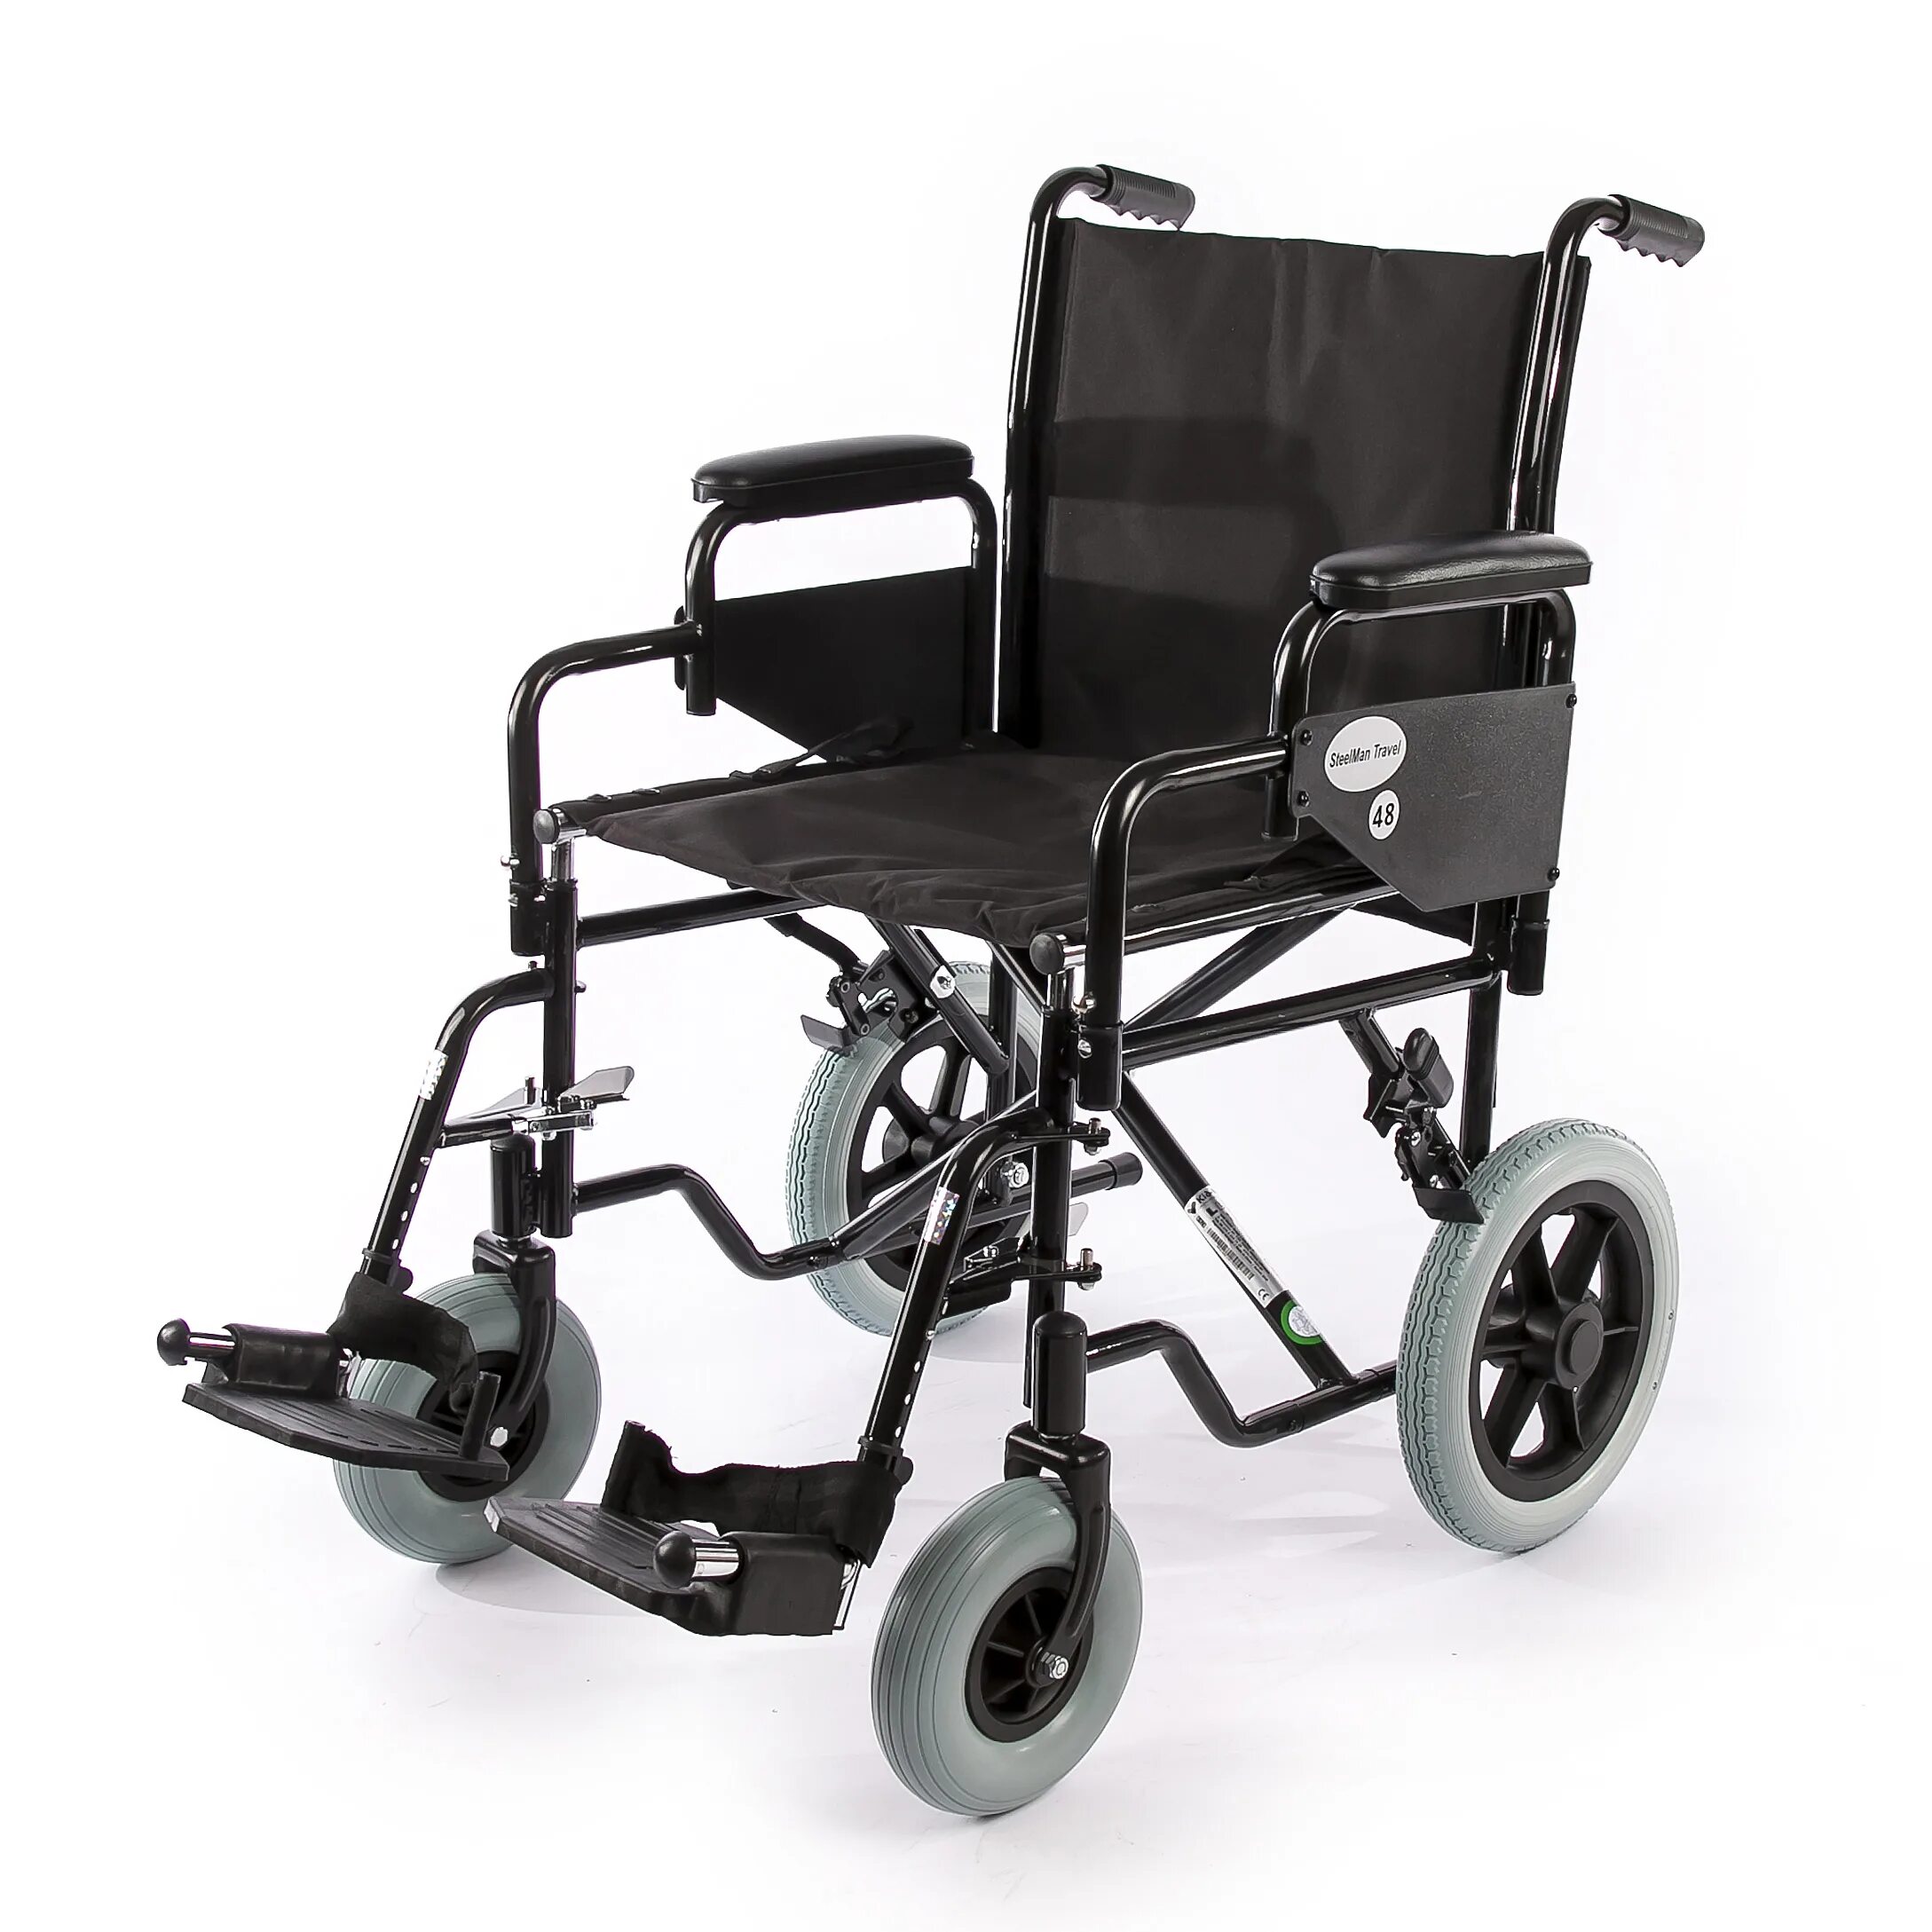 Где можно взять инвалидную коляску. Кресло-коляска инвалидная ly-800-690. Армед 006 коляска инвалидная. CATERWIL инвалидная коляска gts4. Мустанг коляска инвалидная.